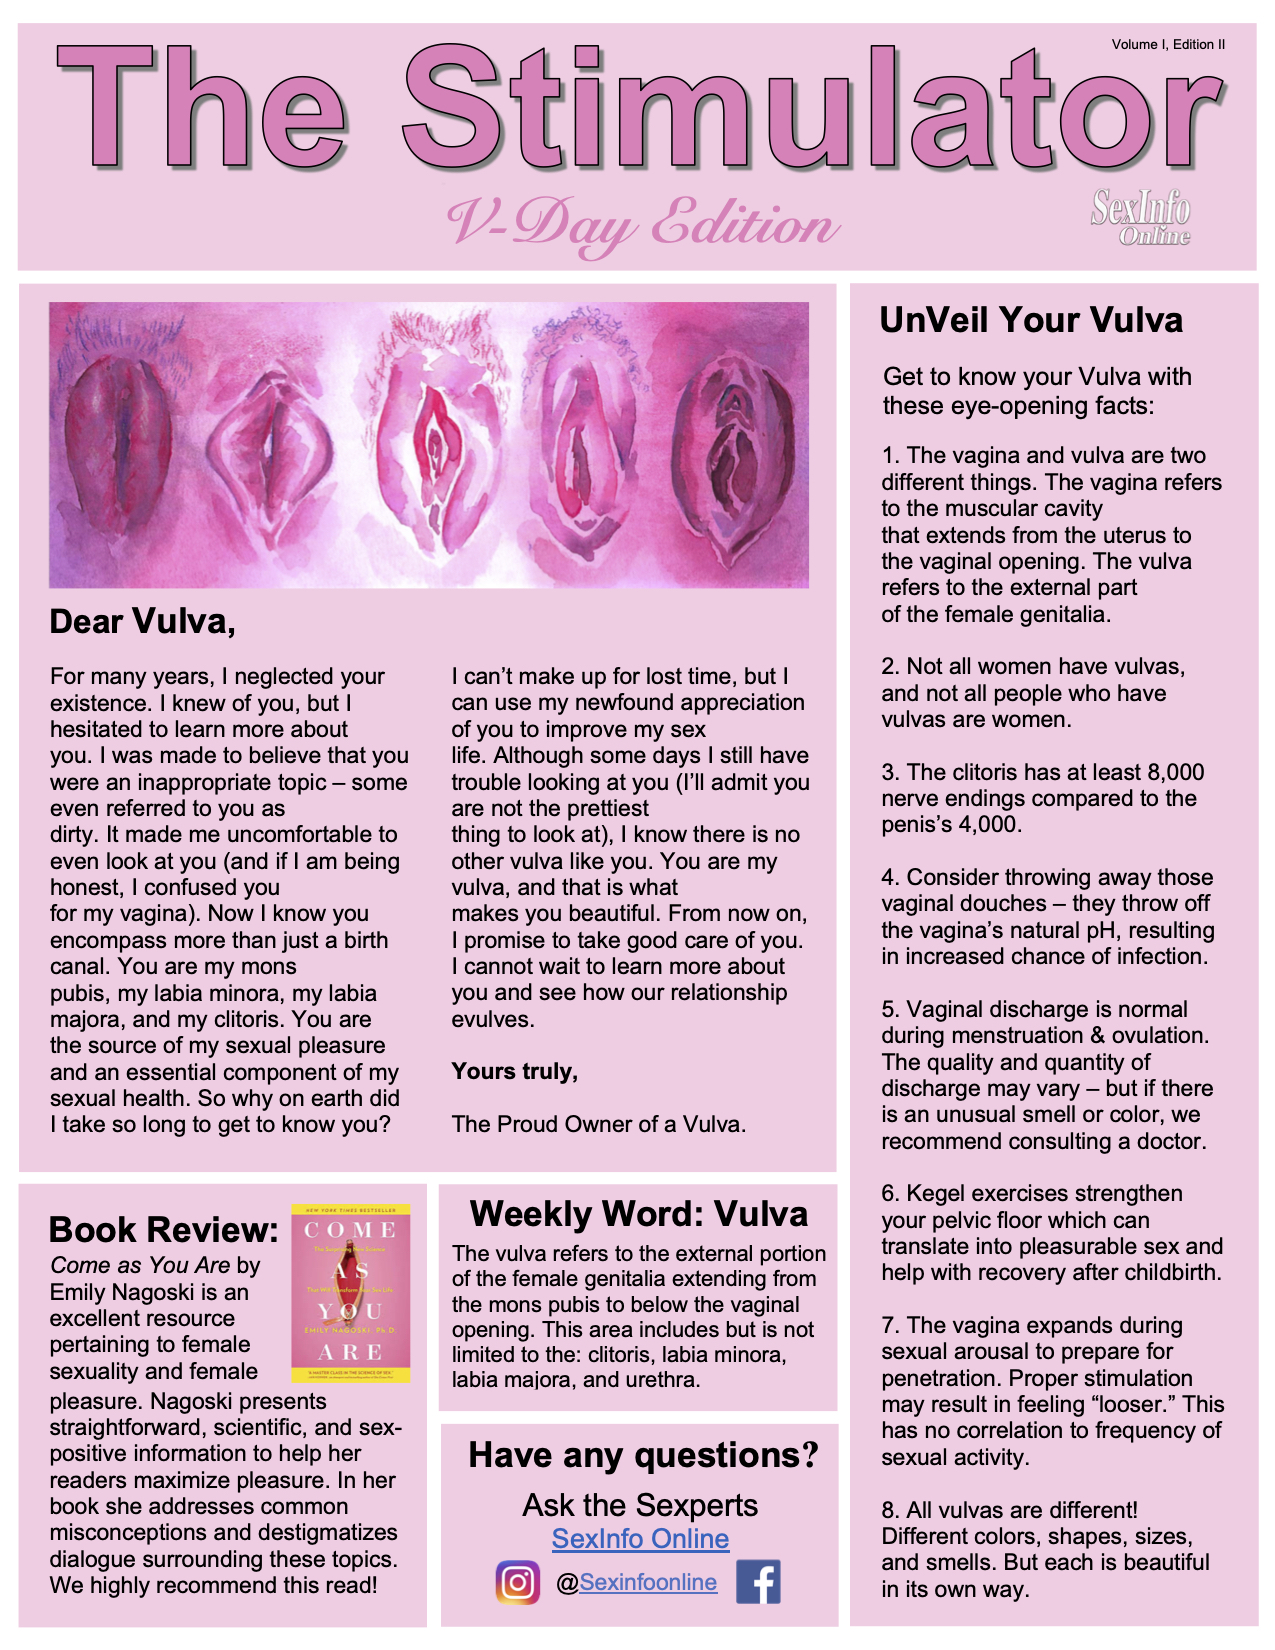 Vulvas and Valentines